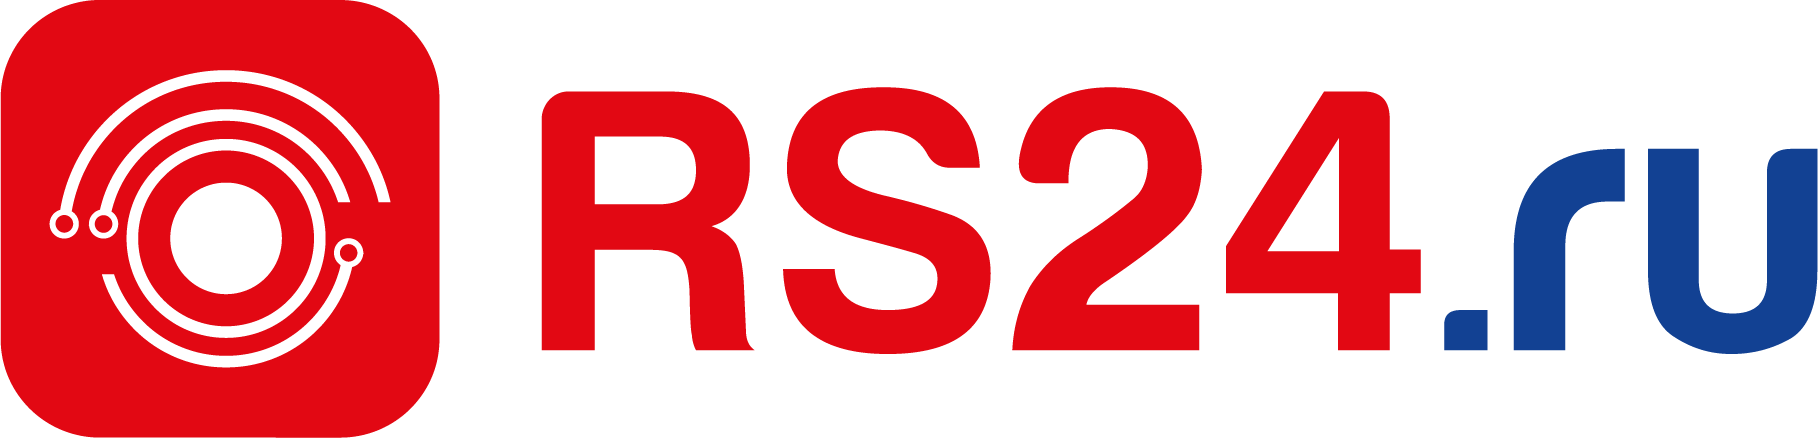 Купить в русском свете. Rs24. Rs24 логотип. Русский свет логотип. RS 24 русский свет.